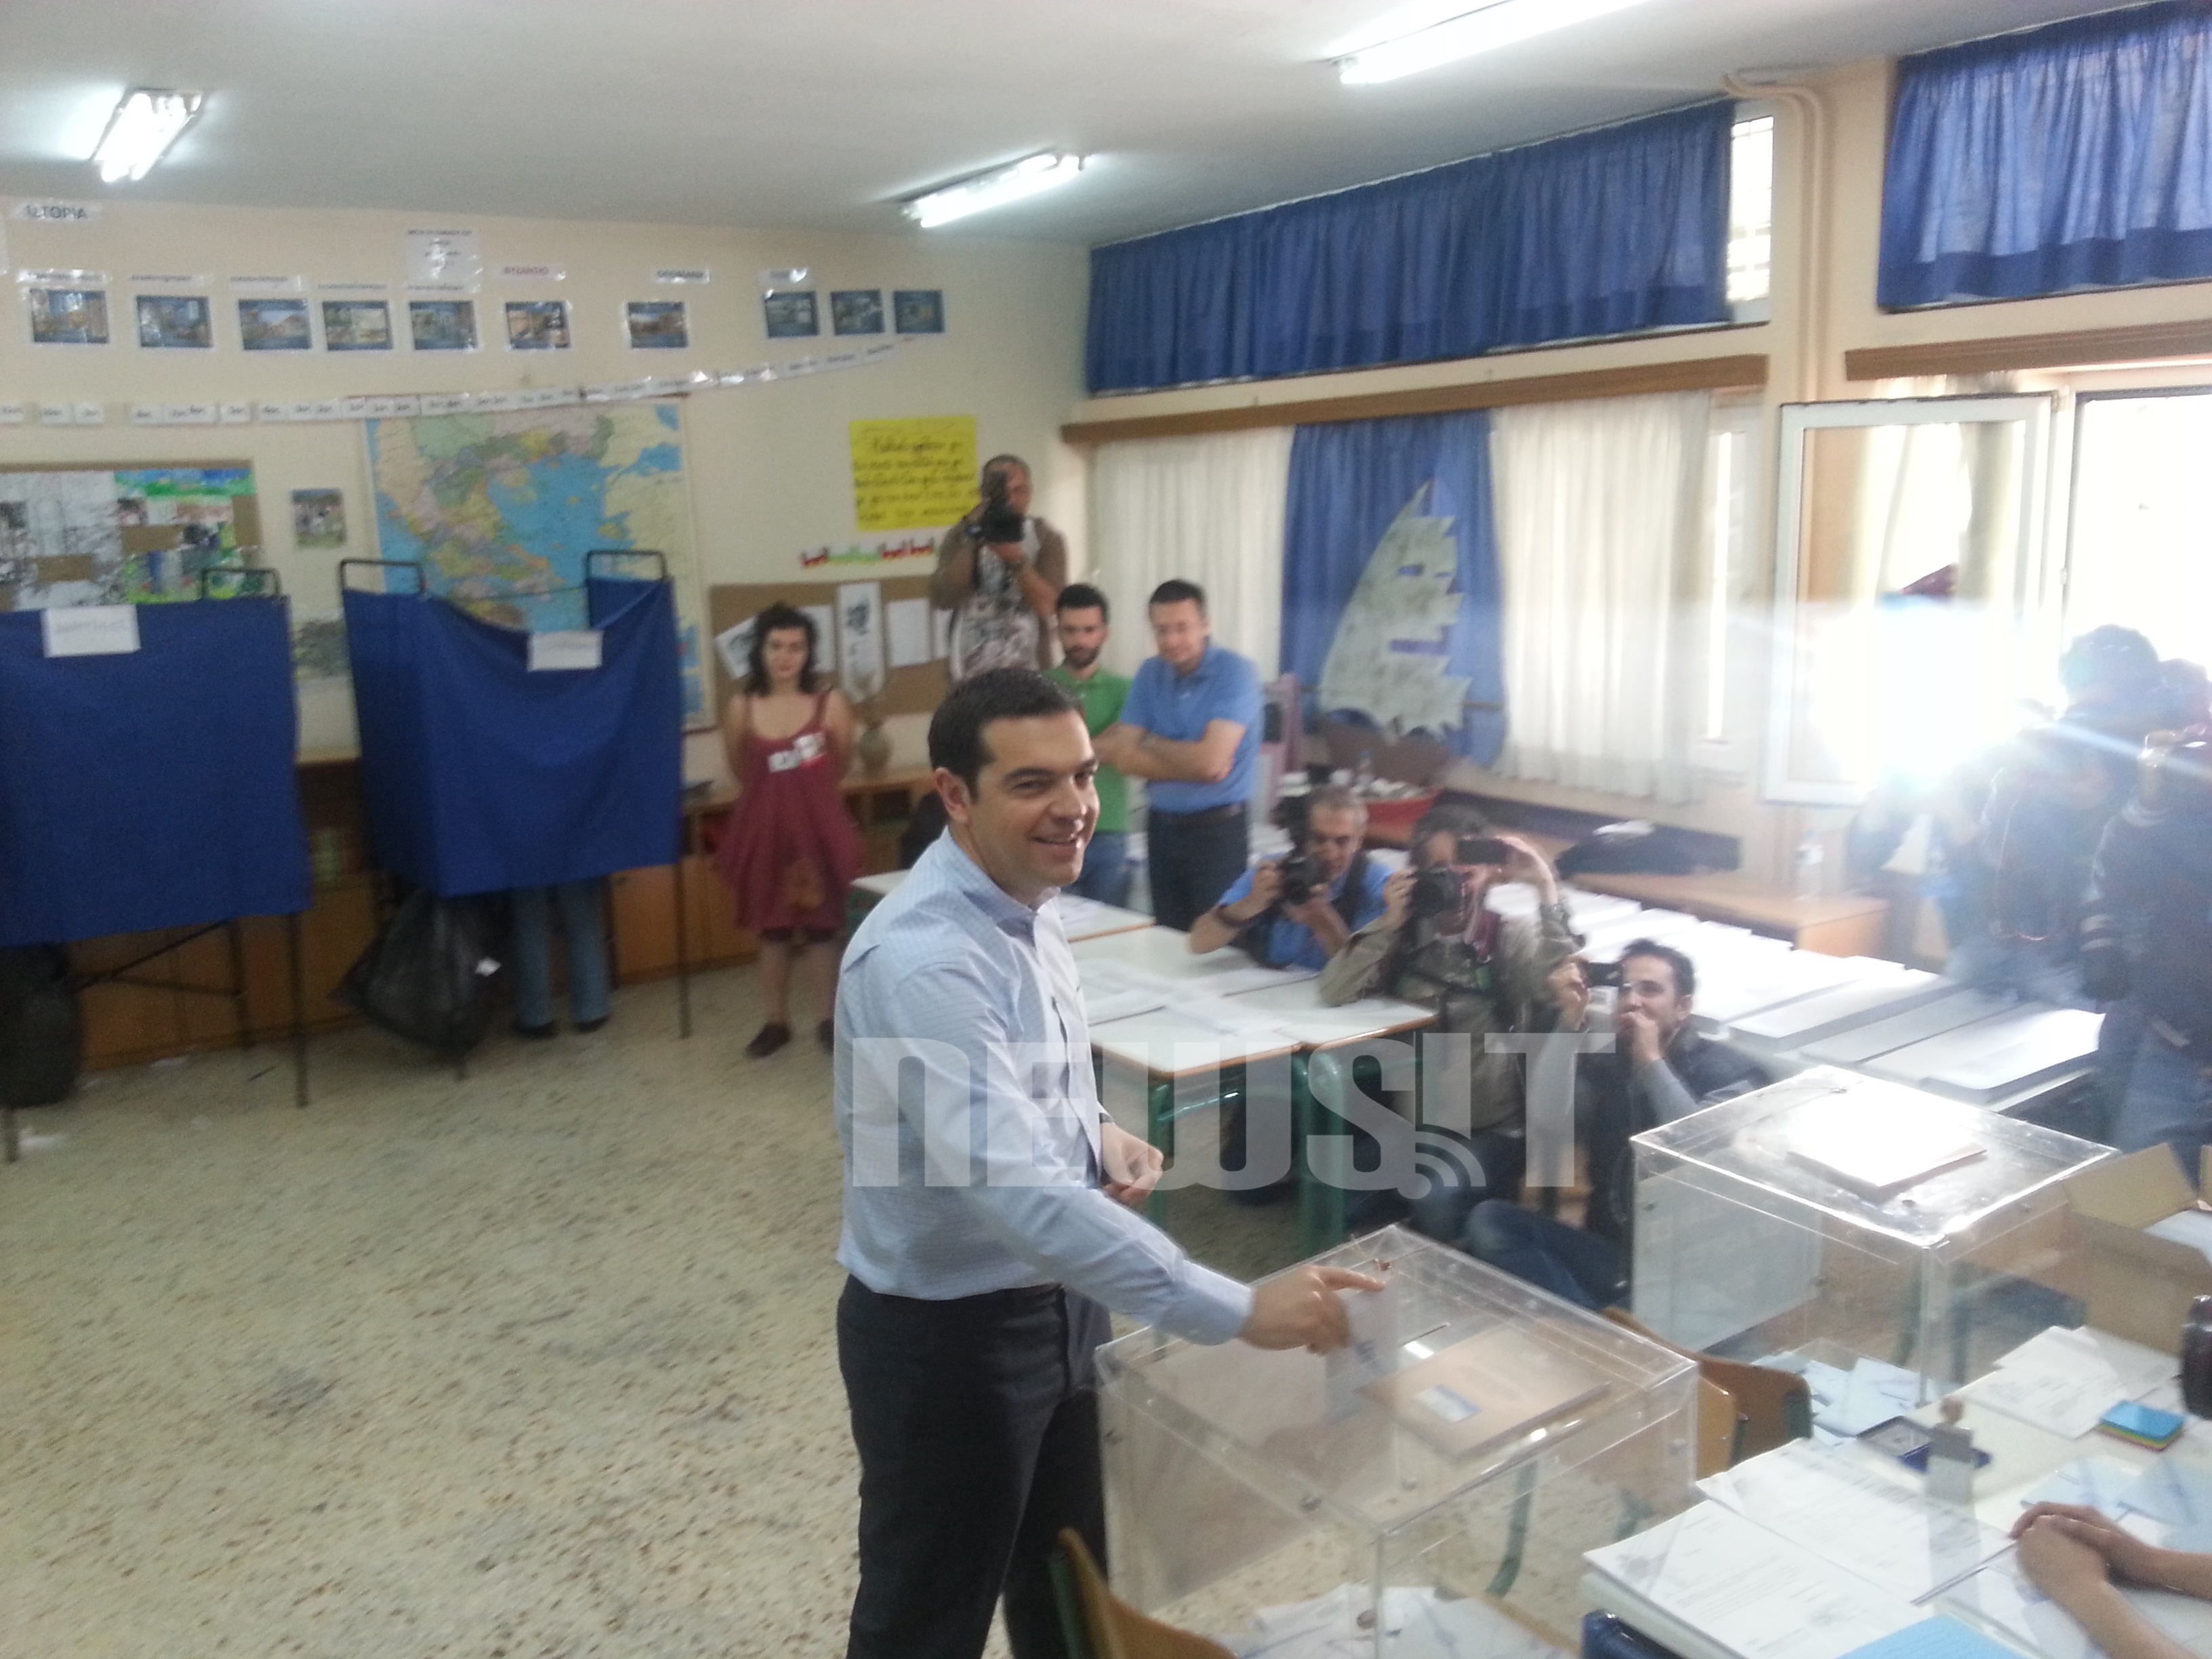 Εκλογές 2014: “Το πρώτο βήμα για να αλλάξει σελίδα η χώρα μας”, τόνισε ο Τσίπρας (ΦΩΤΟ και BINTEO)